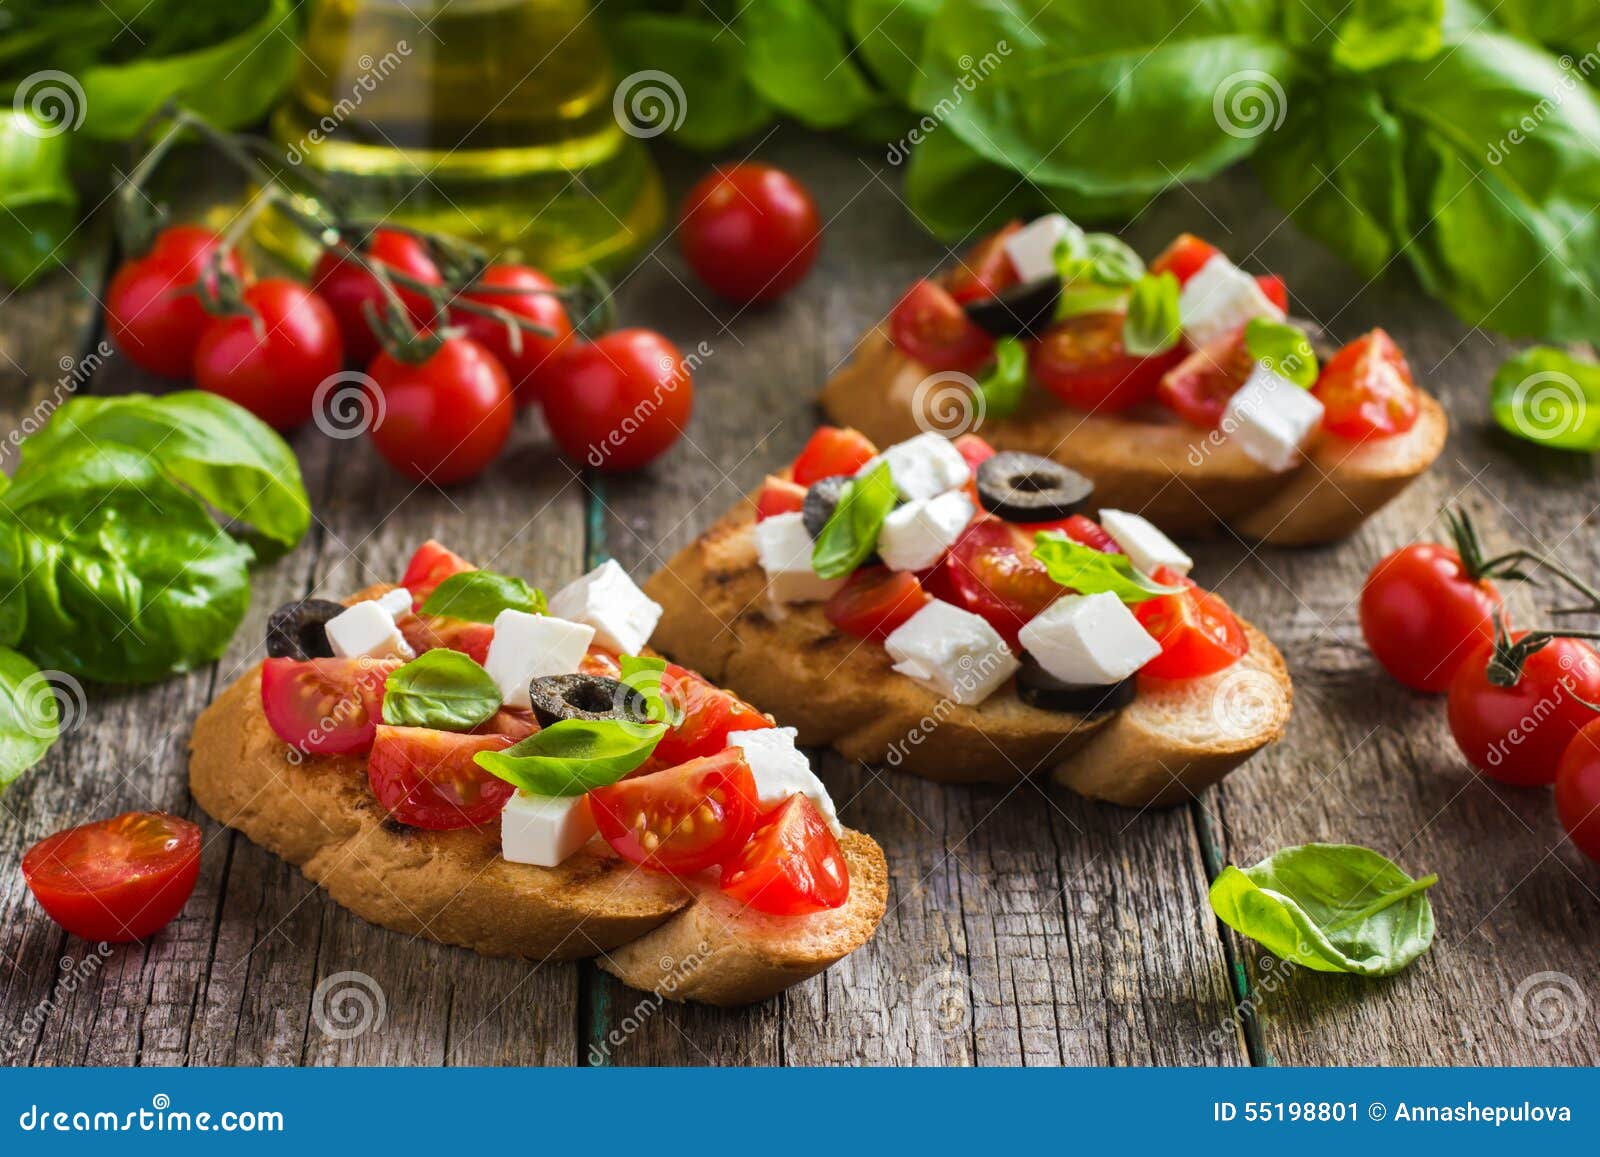 Bruschetta Mit Tomate, Feta, Oliven Und Basilikum Stockbild - Bild von ...